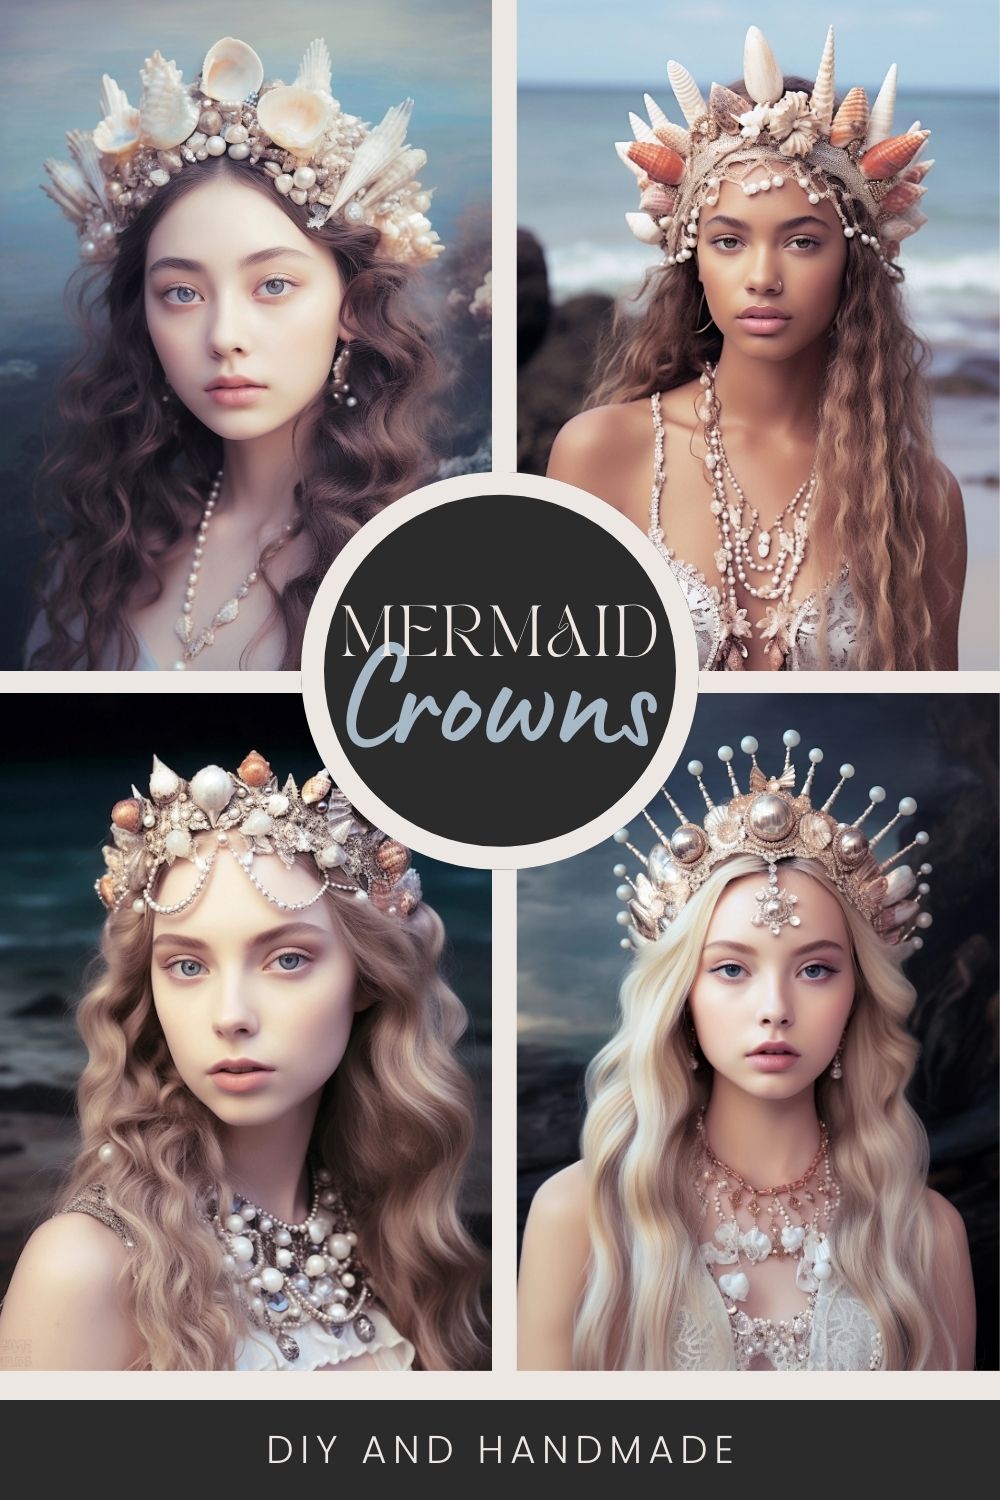 A Mermaid Crown